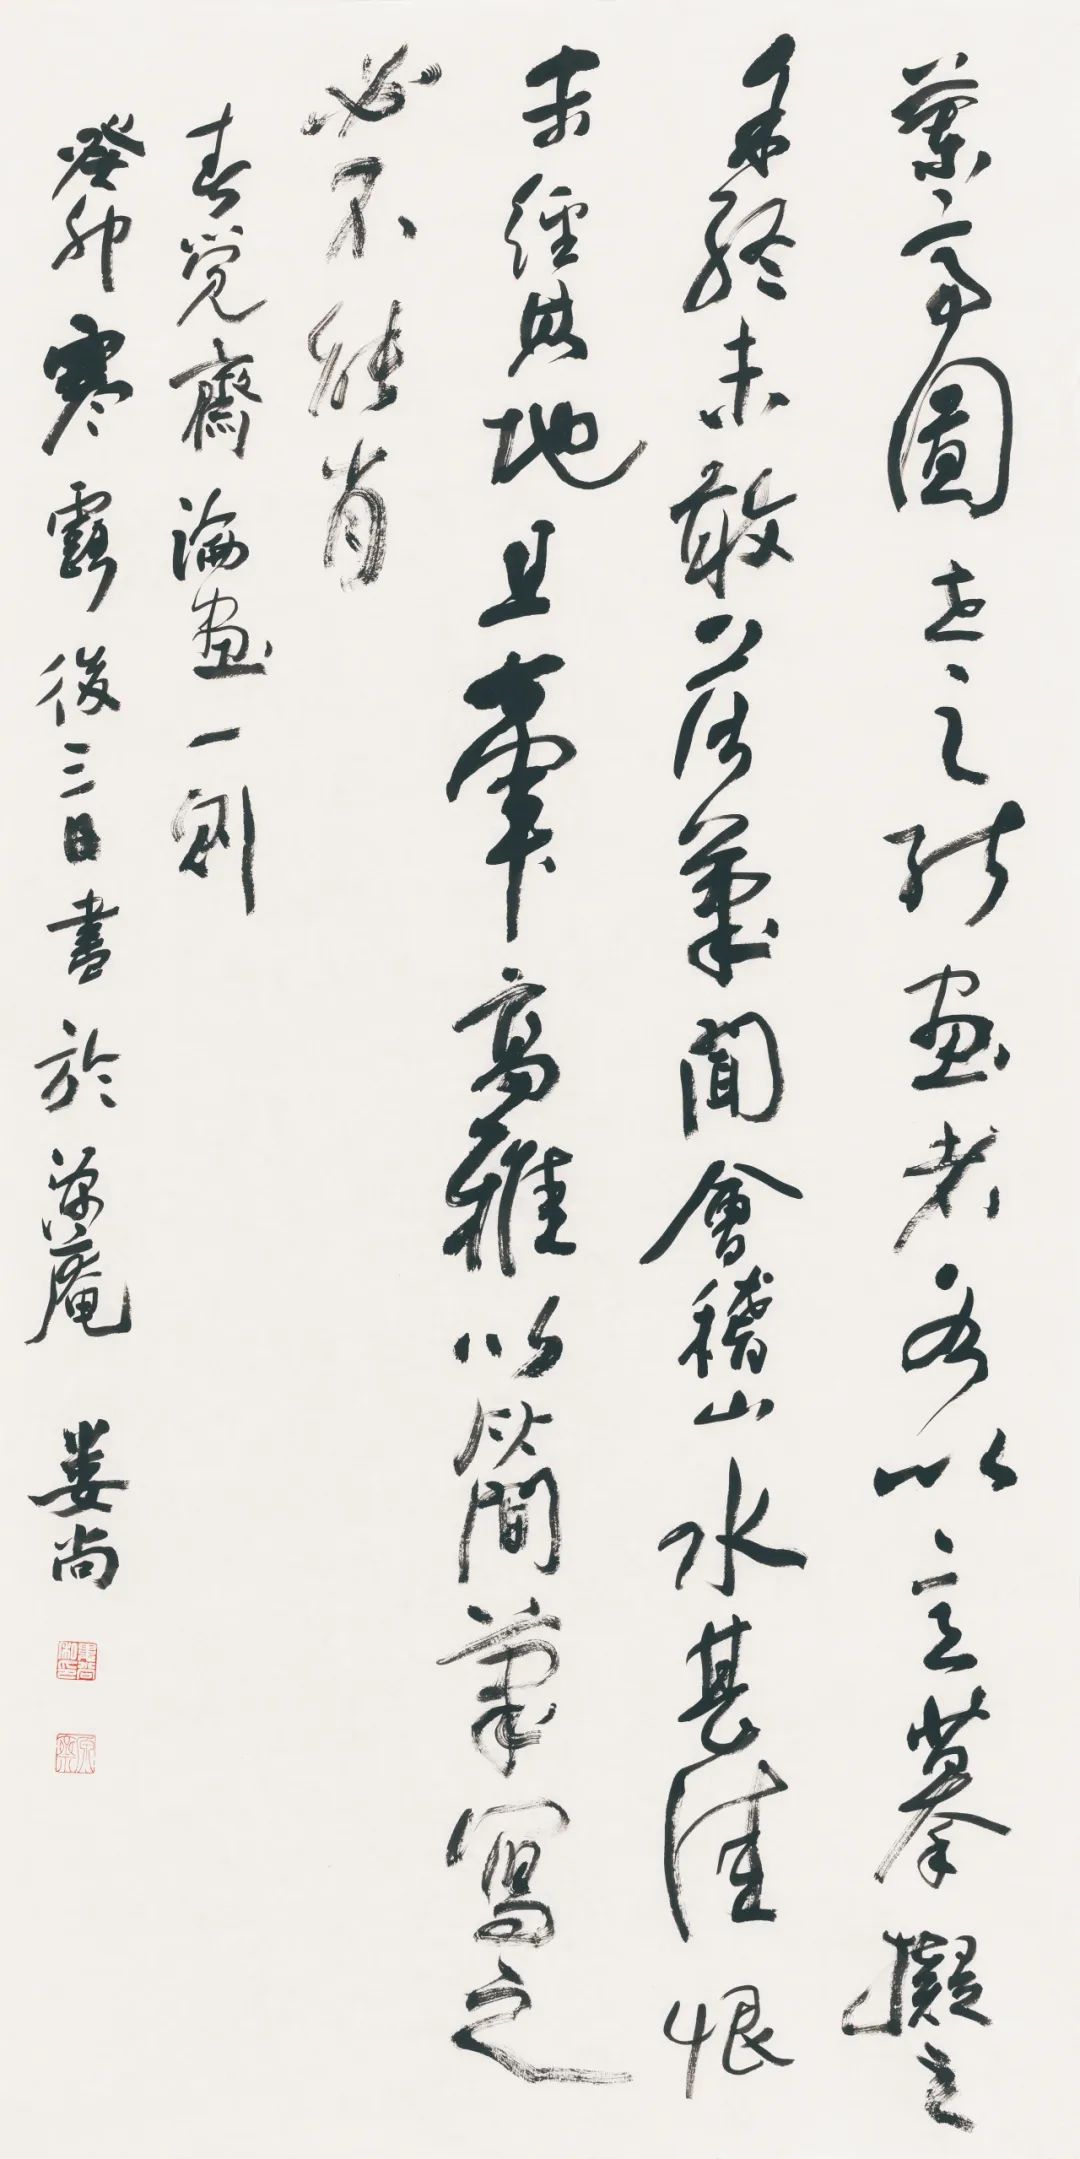 藏·展览丨纸笺传情，笔墨放歌——河南书法名家邀请展 · 参展名家介绍（1）(图9)